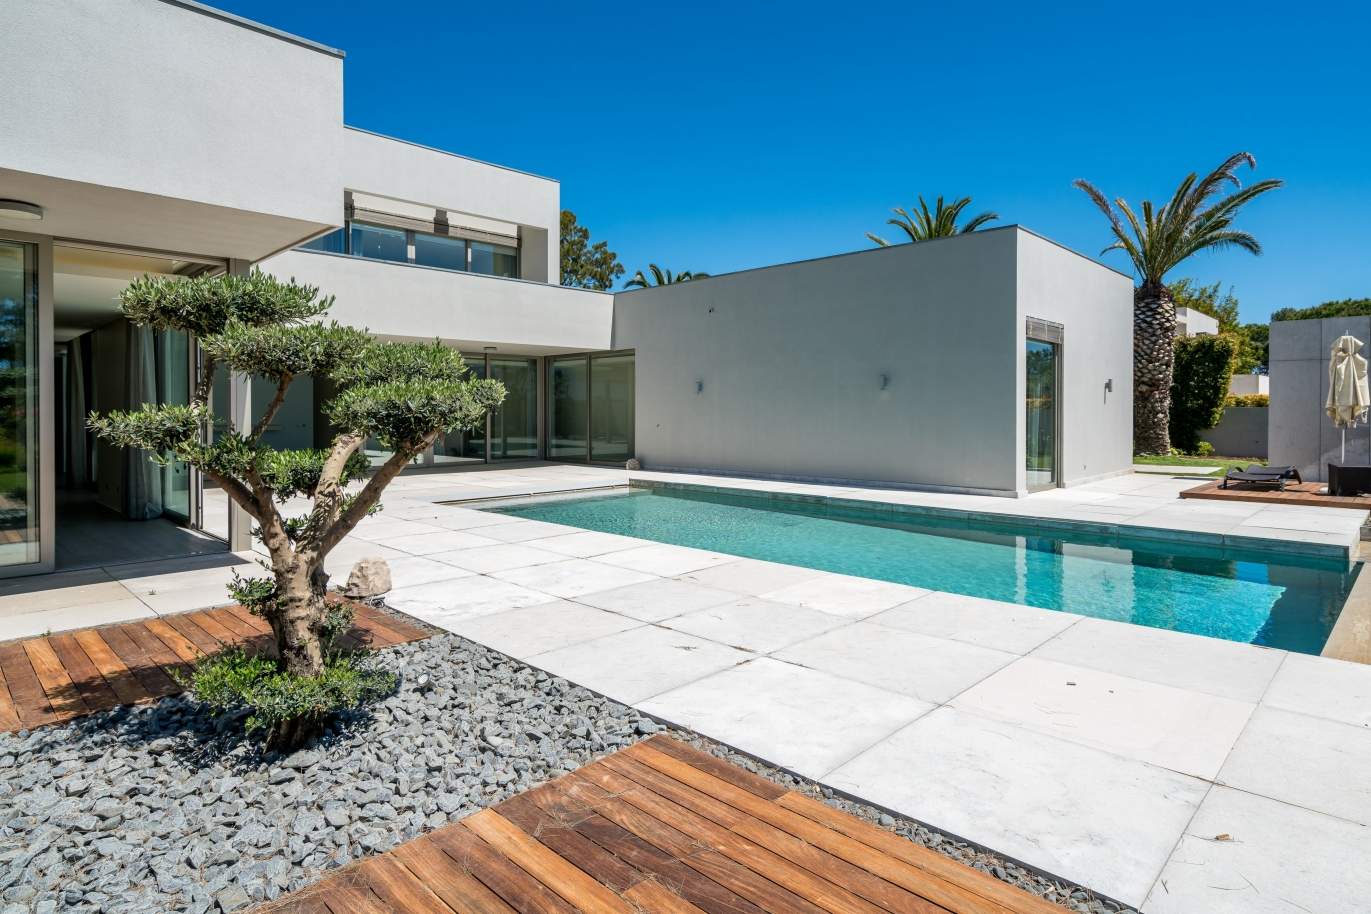 Venda de moradia luxuosa moderna com piscina no Alvor, Algarve_102638